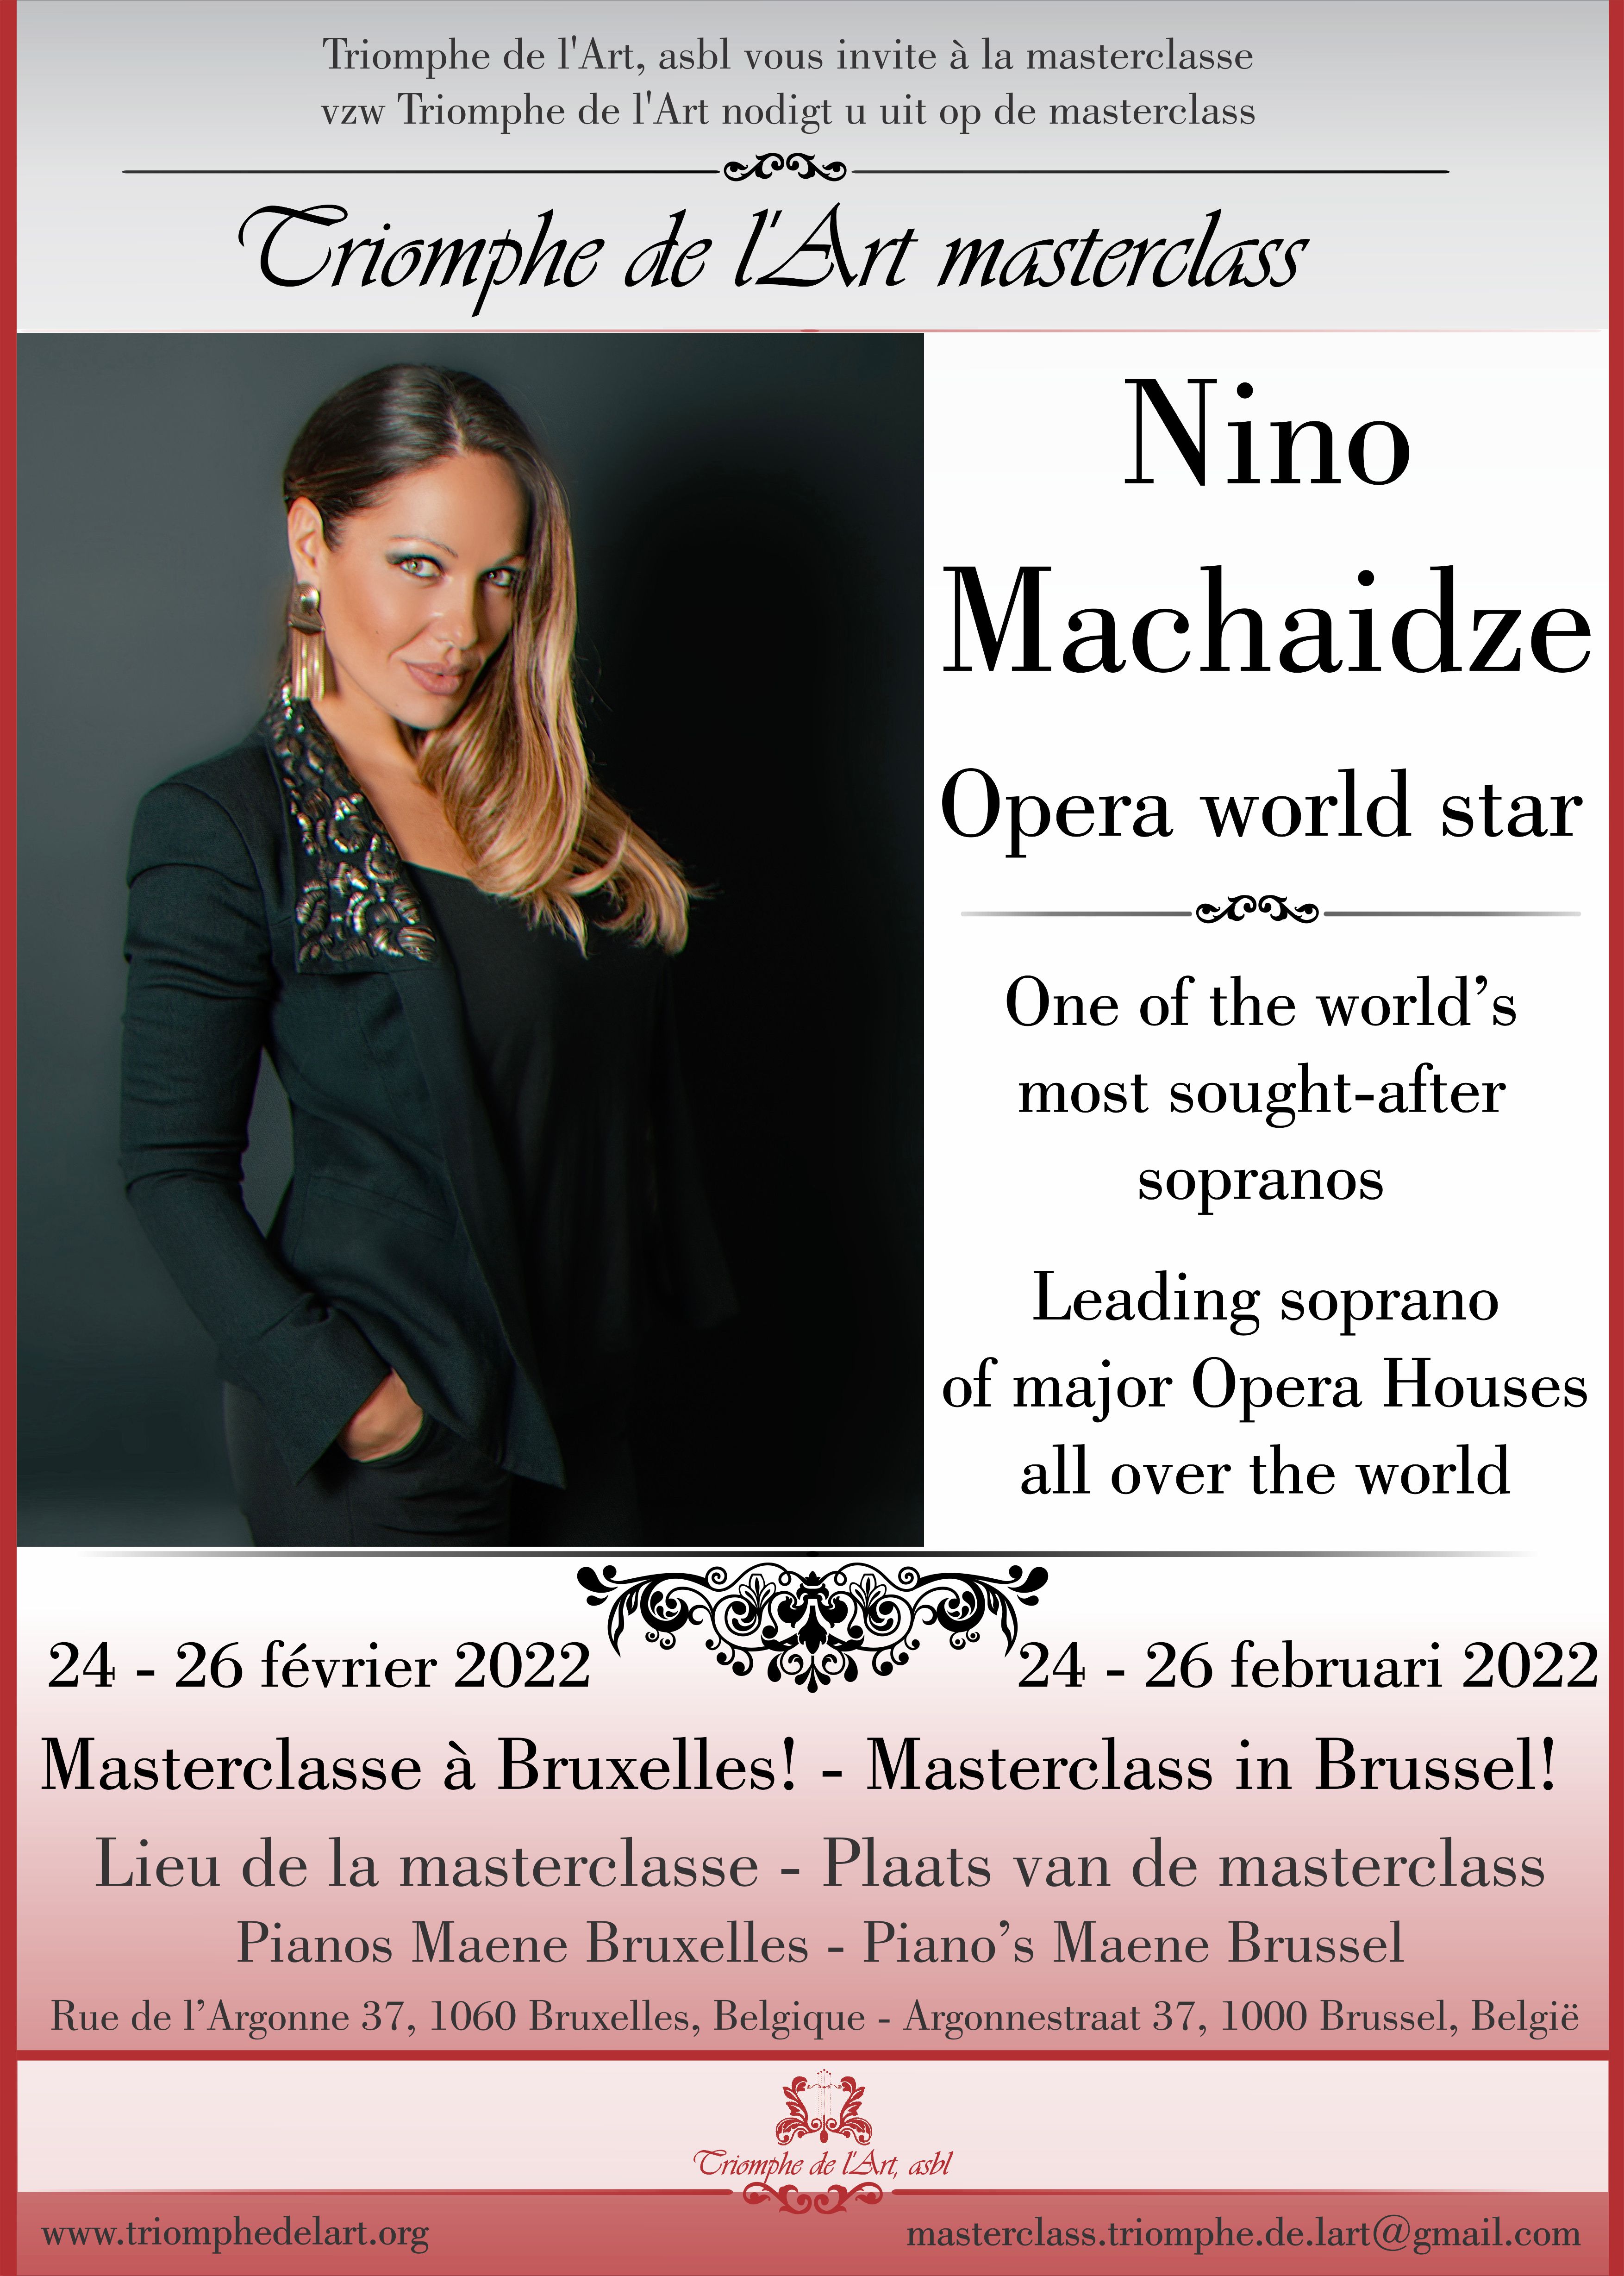 Nino Machaidze masterclass february 2022